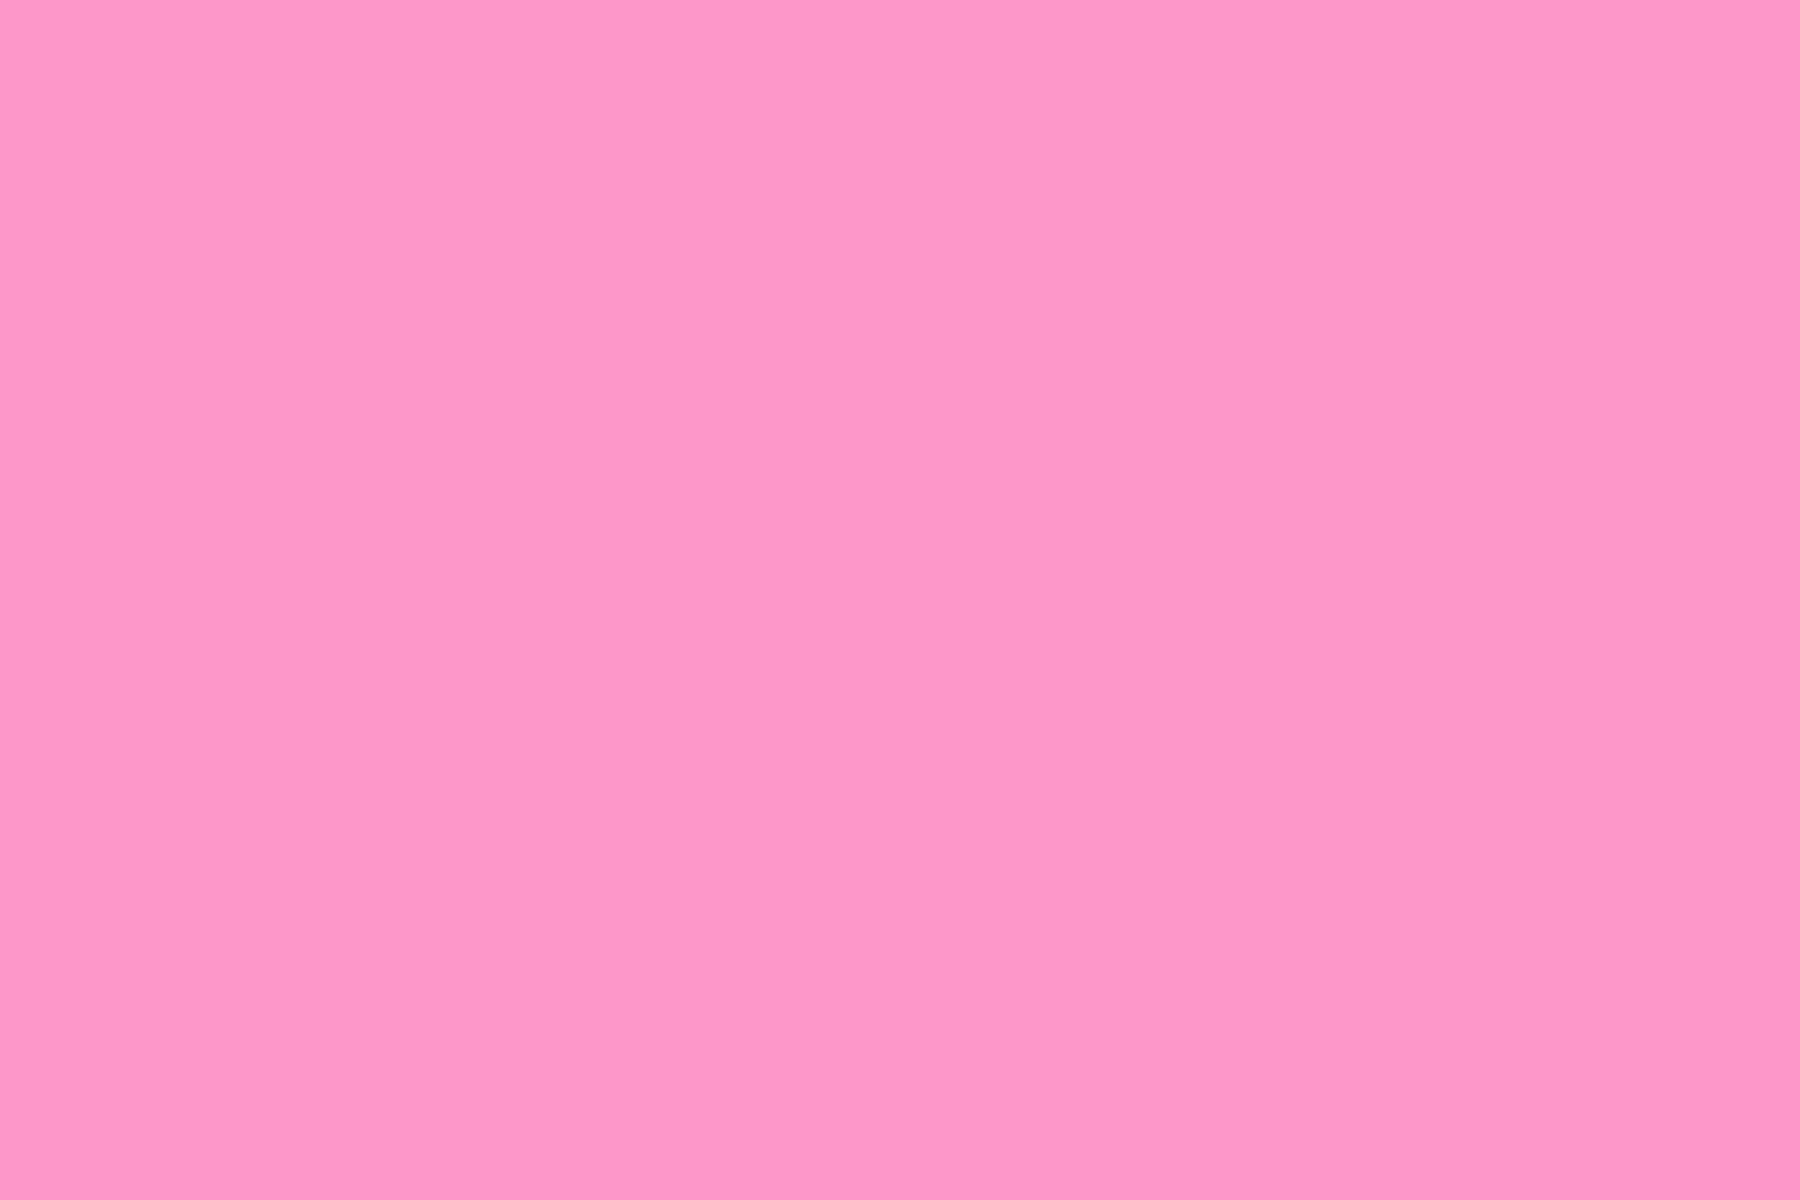 Fondos de color rosa liso # 6900068